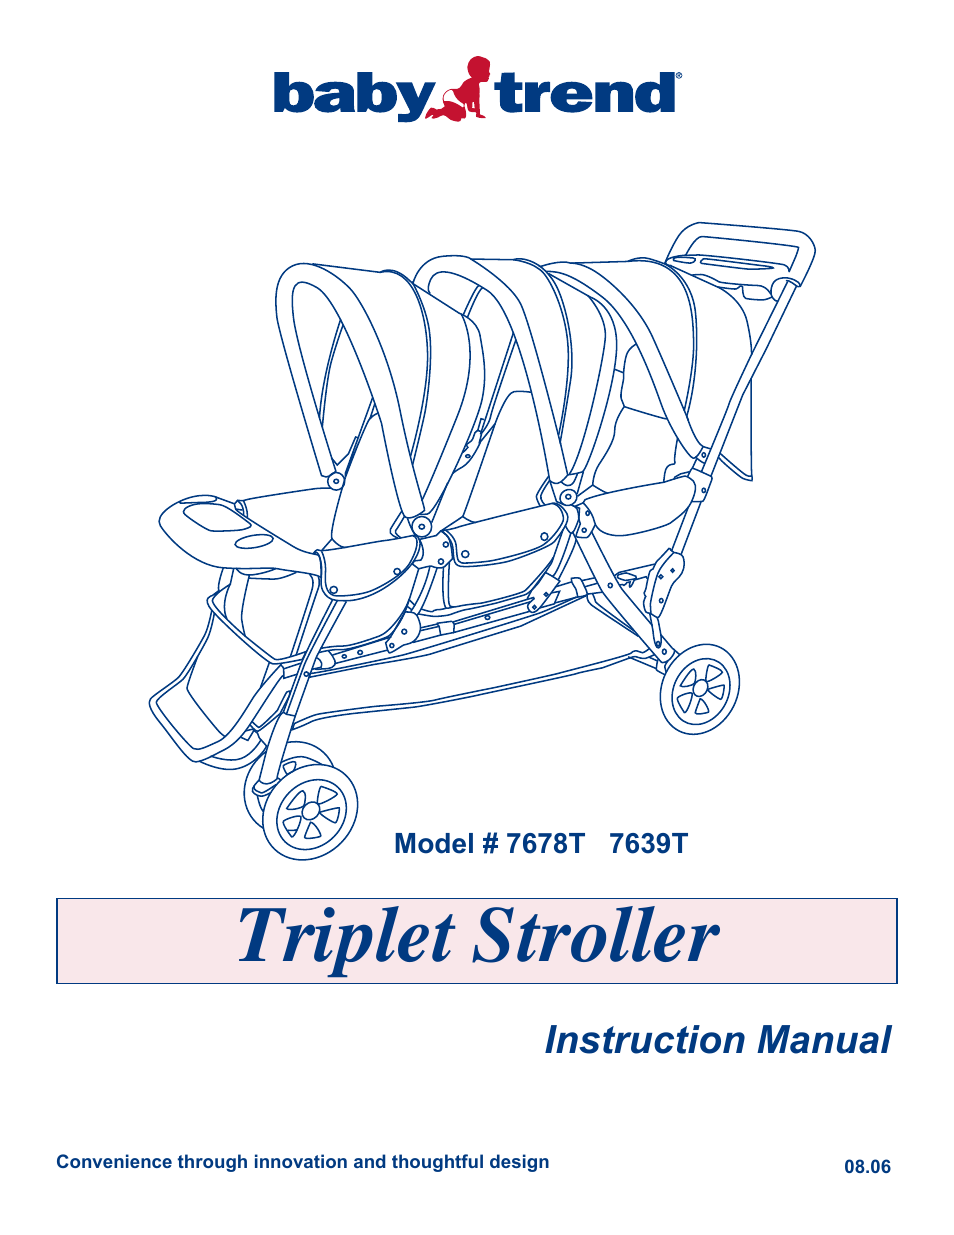 7639T - TRIPLE STROLLER - BLACK & SILVER